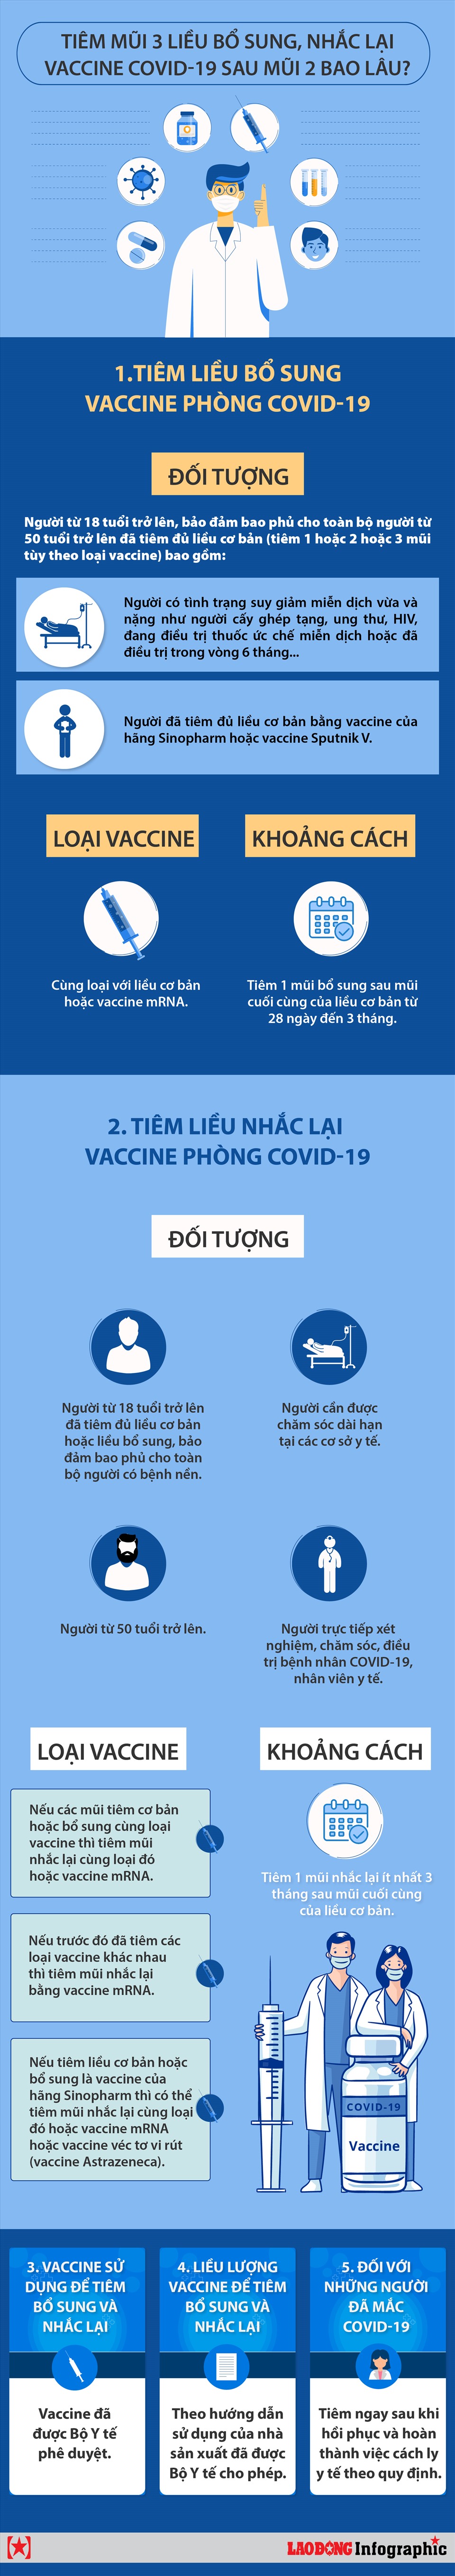 Tiêm mũi 3 liều bổ sung, nhắc lại vắc xin COVID-19 sau mũi 2 bao lâu? - Ảnh 1